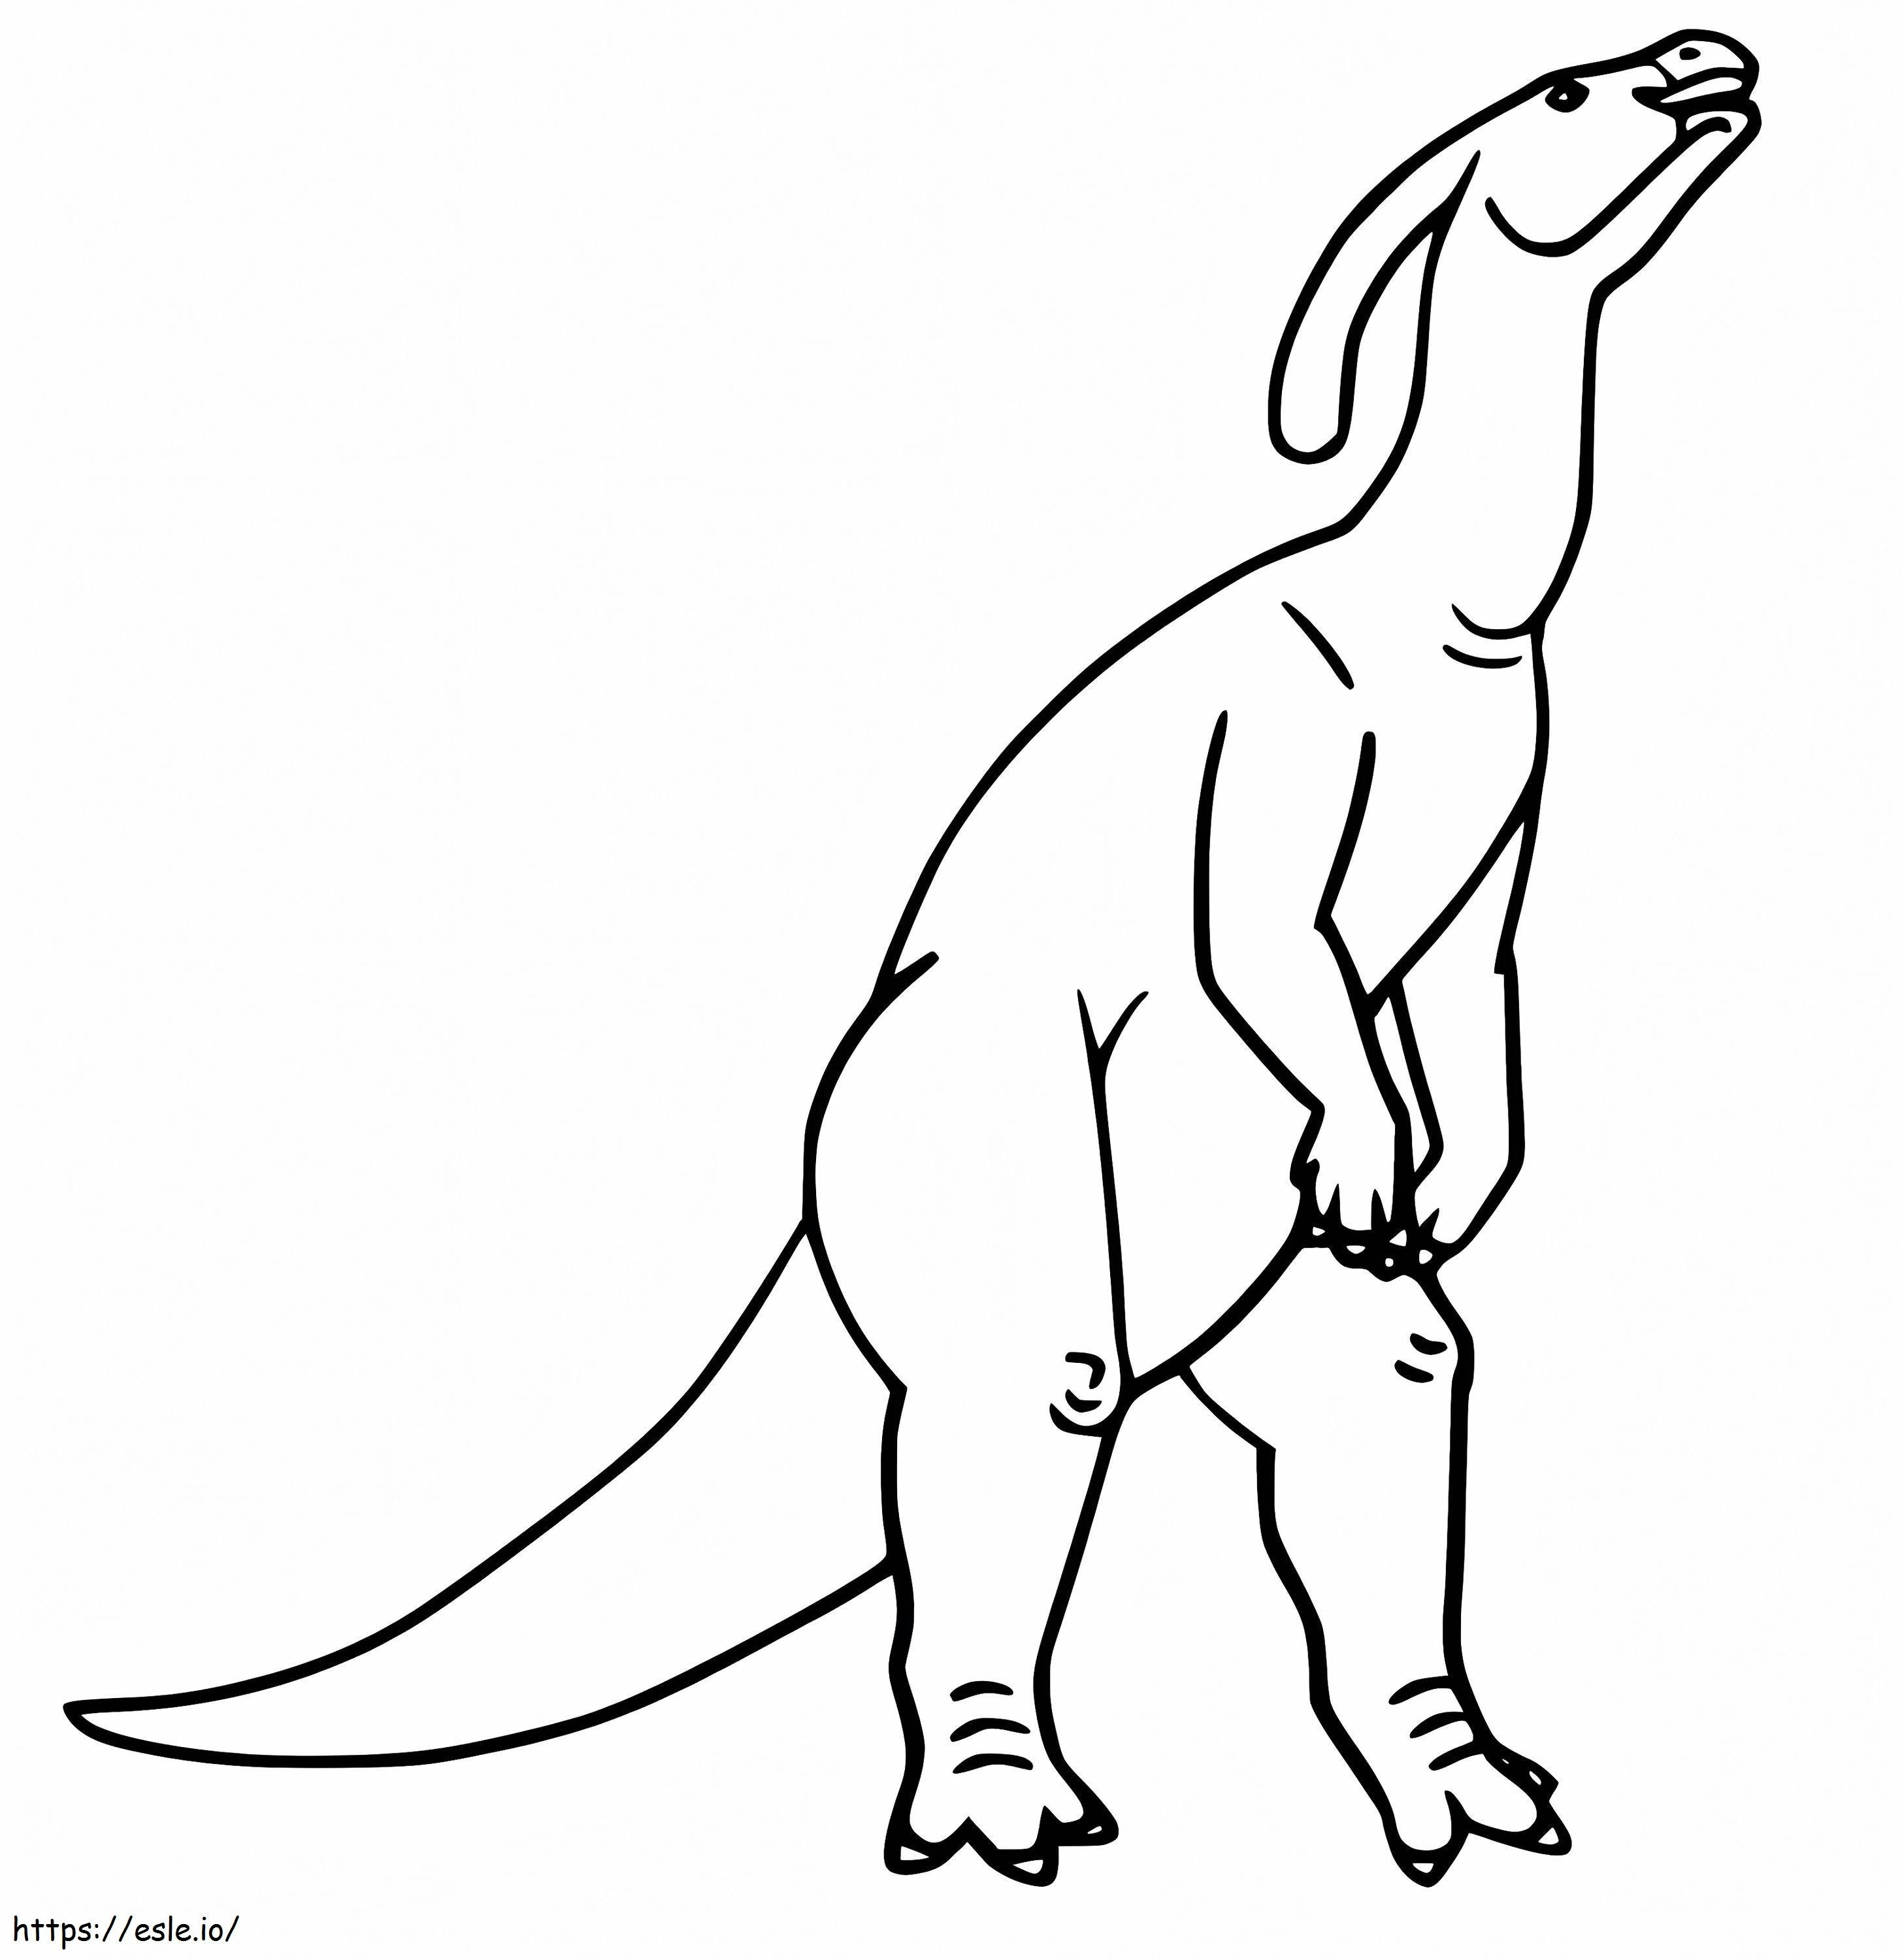 Coloriage Parasaurolophus 1 à imprimer dessin